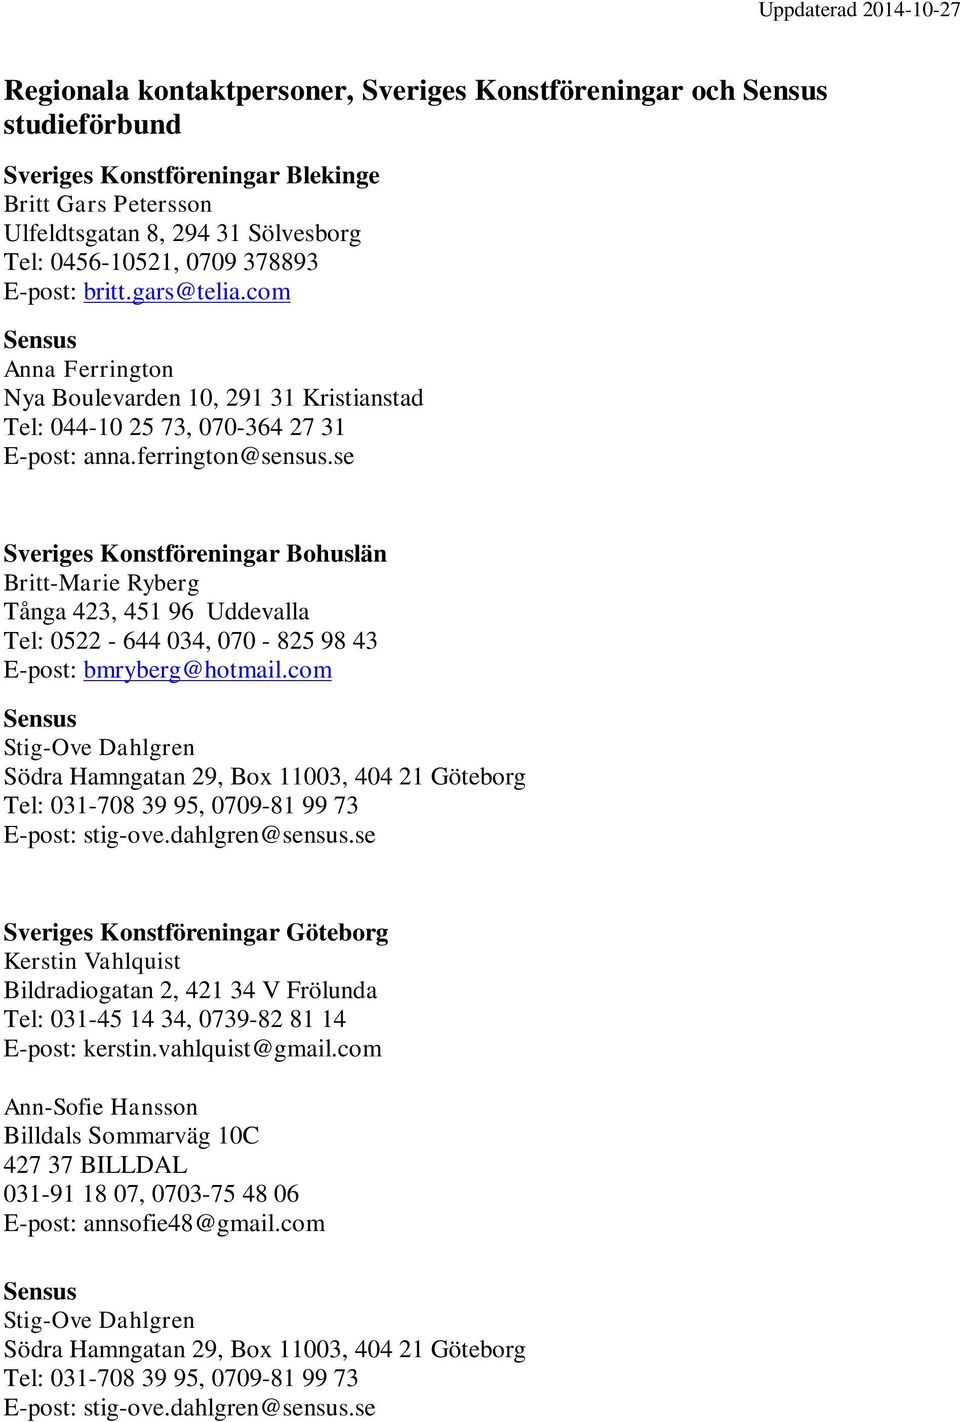 se Sveriges Konstföreningar Bohuslän Britt-Marie Ryberg Tånga 423, 451 96 Uddevalla Tel: 0522-644 034, 070-825 98 43 E-post: bmryberg@hotmail.